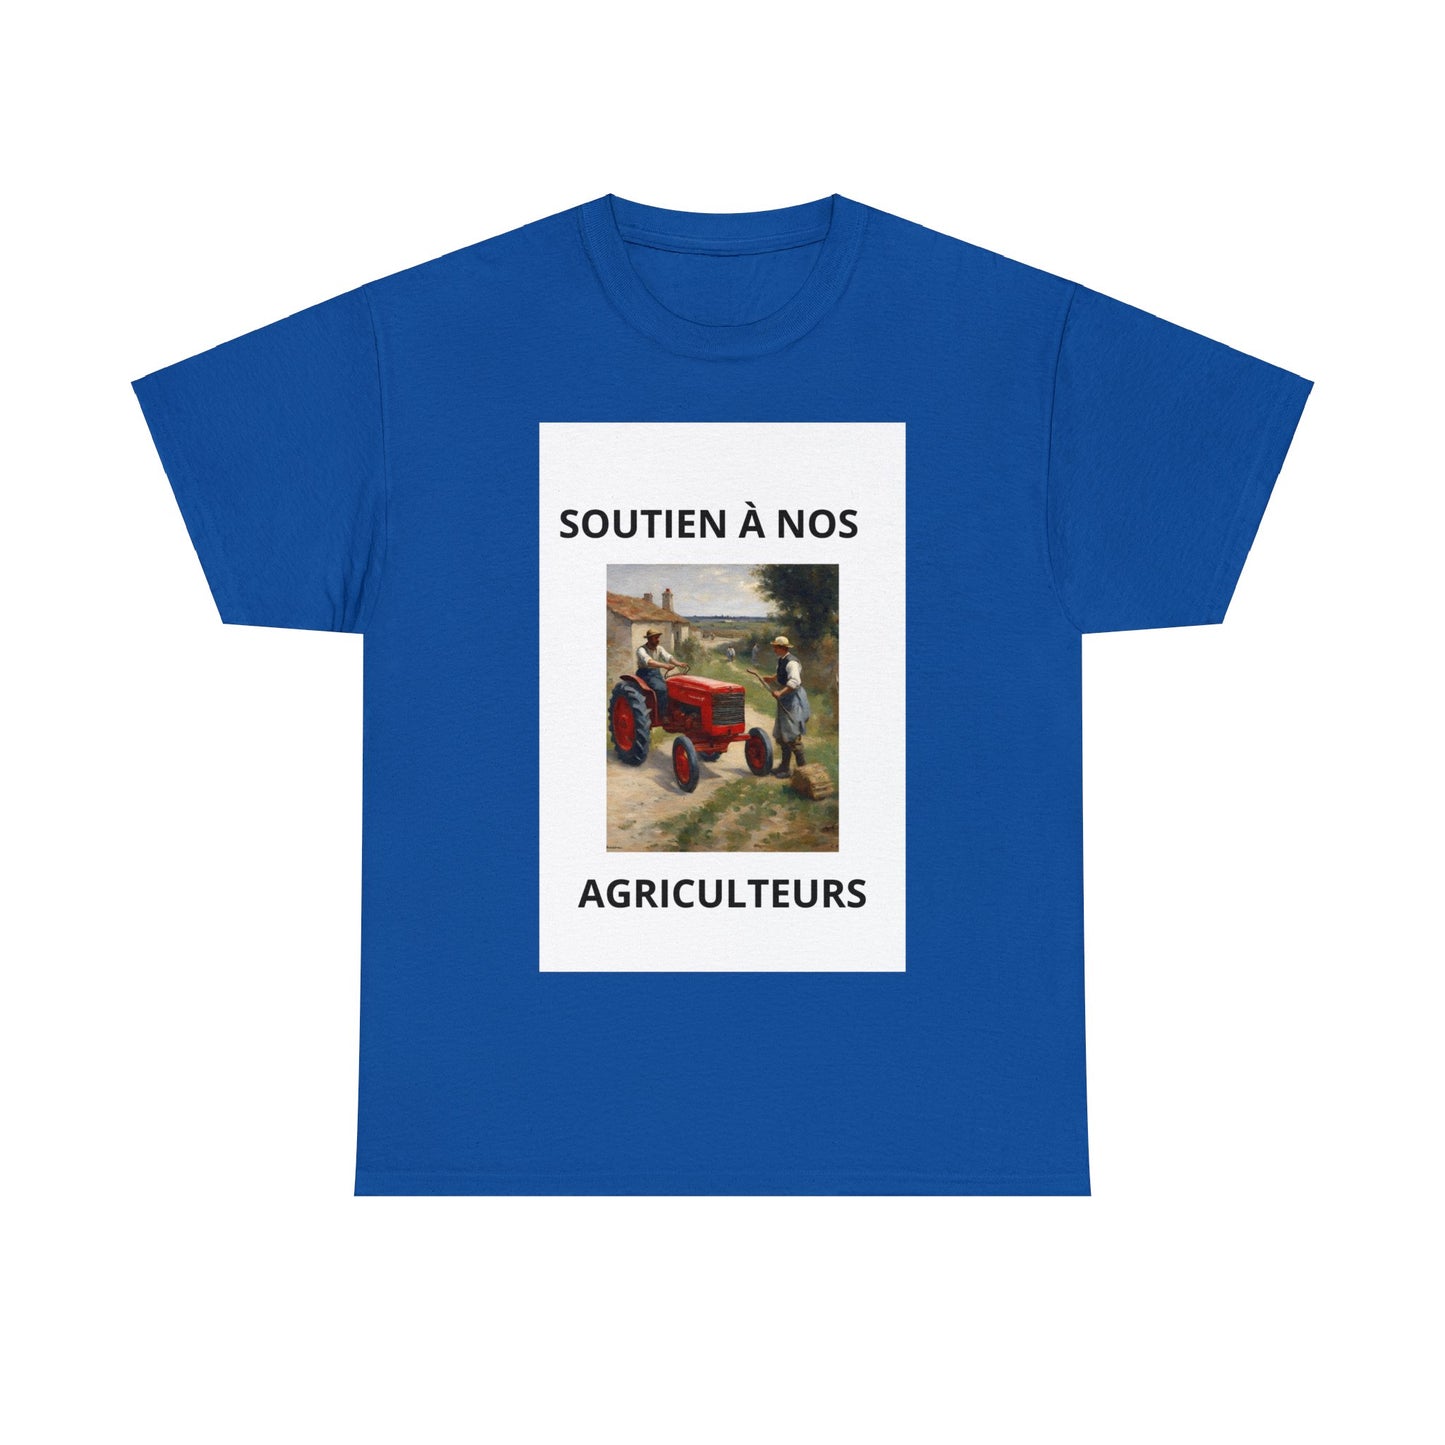 Tee-Shirt Bleu royal unisexe en soutien aux agriculteurs